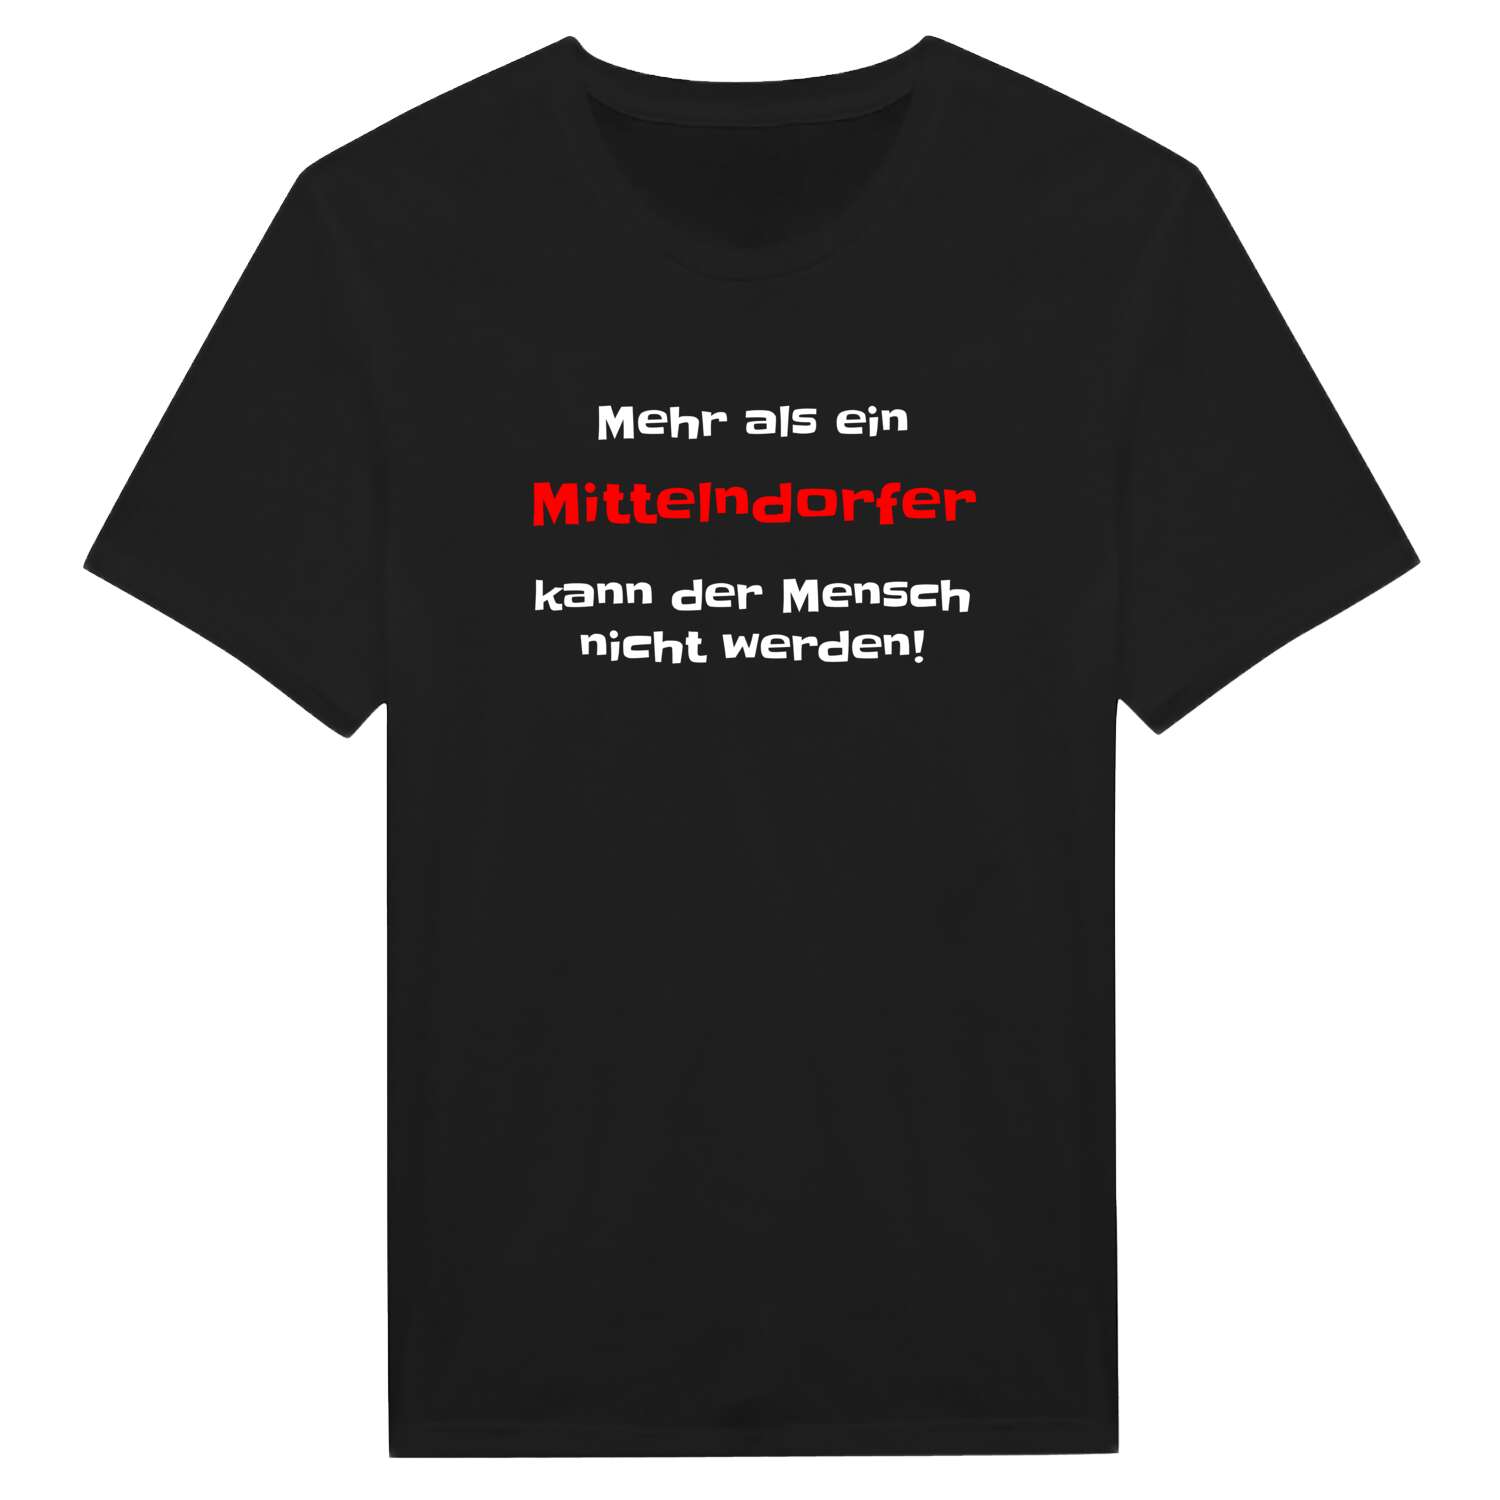 Mittelndorf T-Shirt »Mehr als ein«